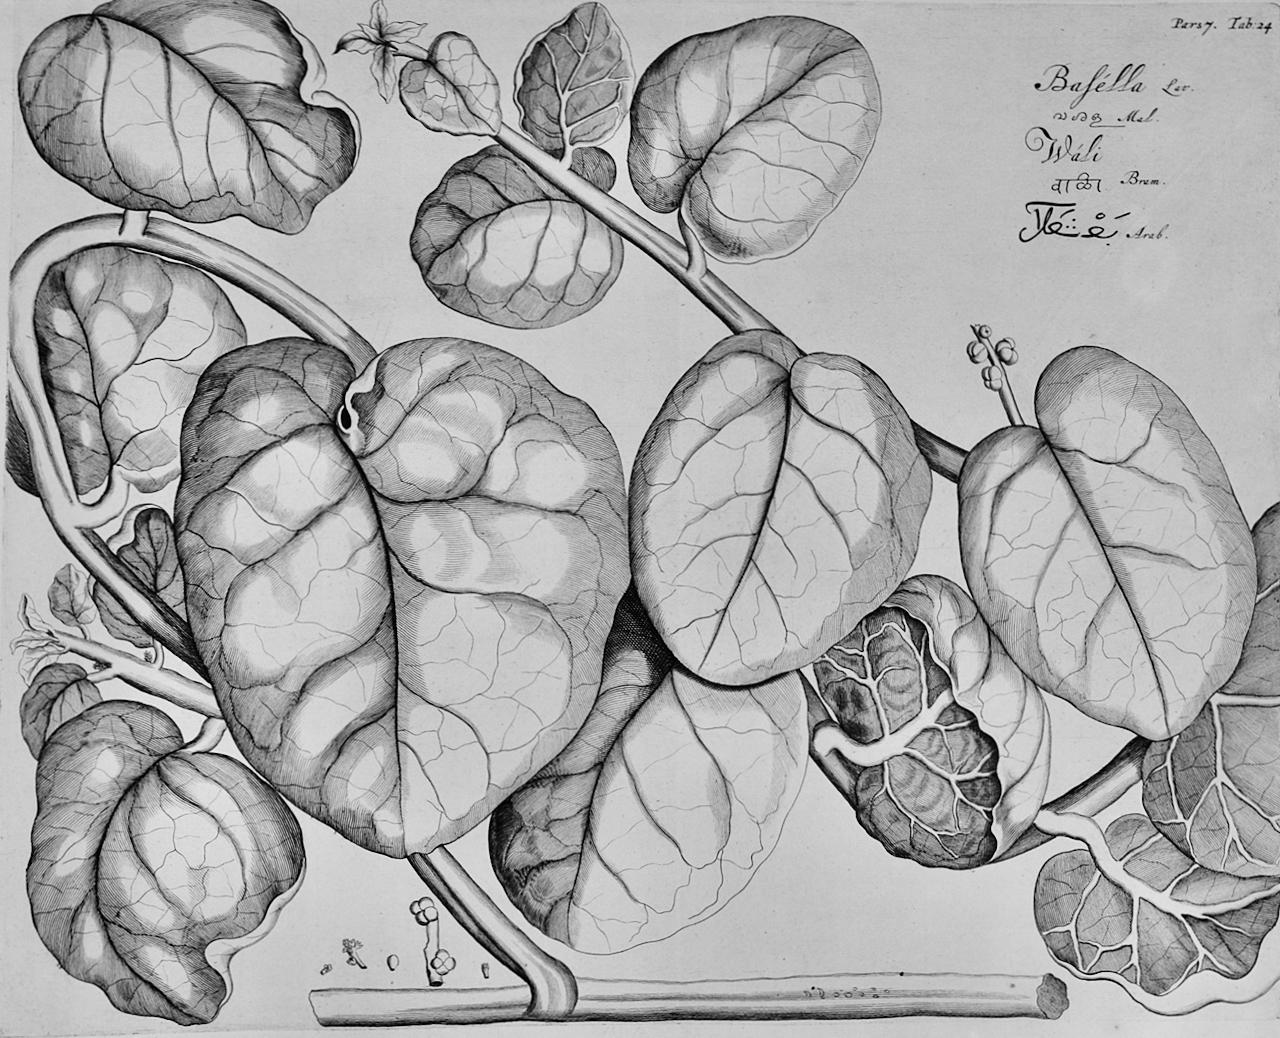 Hendrik Adriaan van Rheede tot Drakenstein Still-Life Print - Vine Spinach "Basella": A 17th Century Botanical Engraving by Hendrik van Rheede